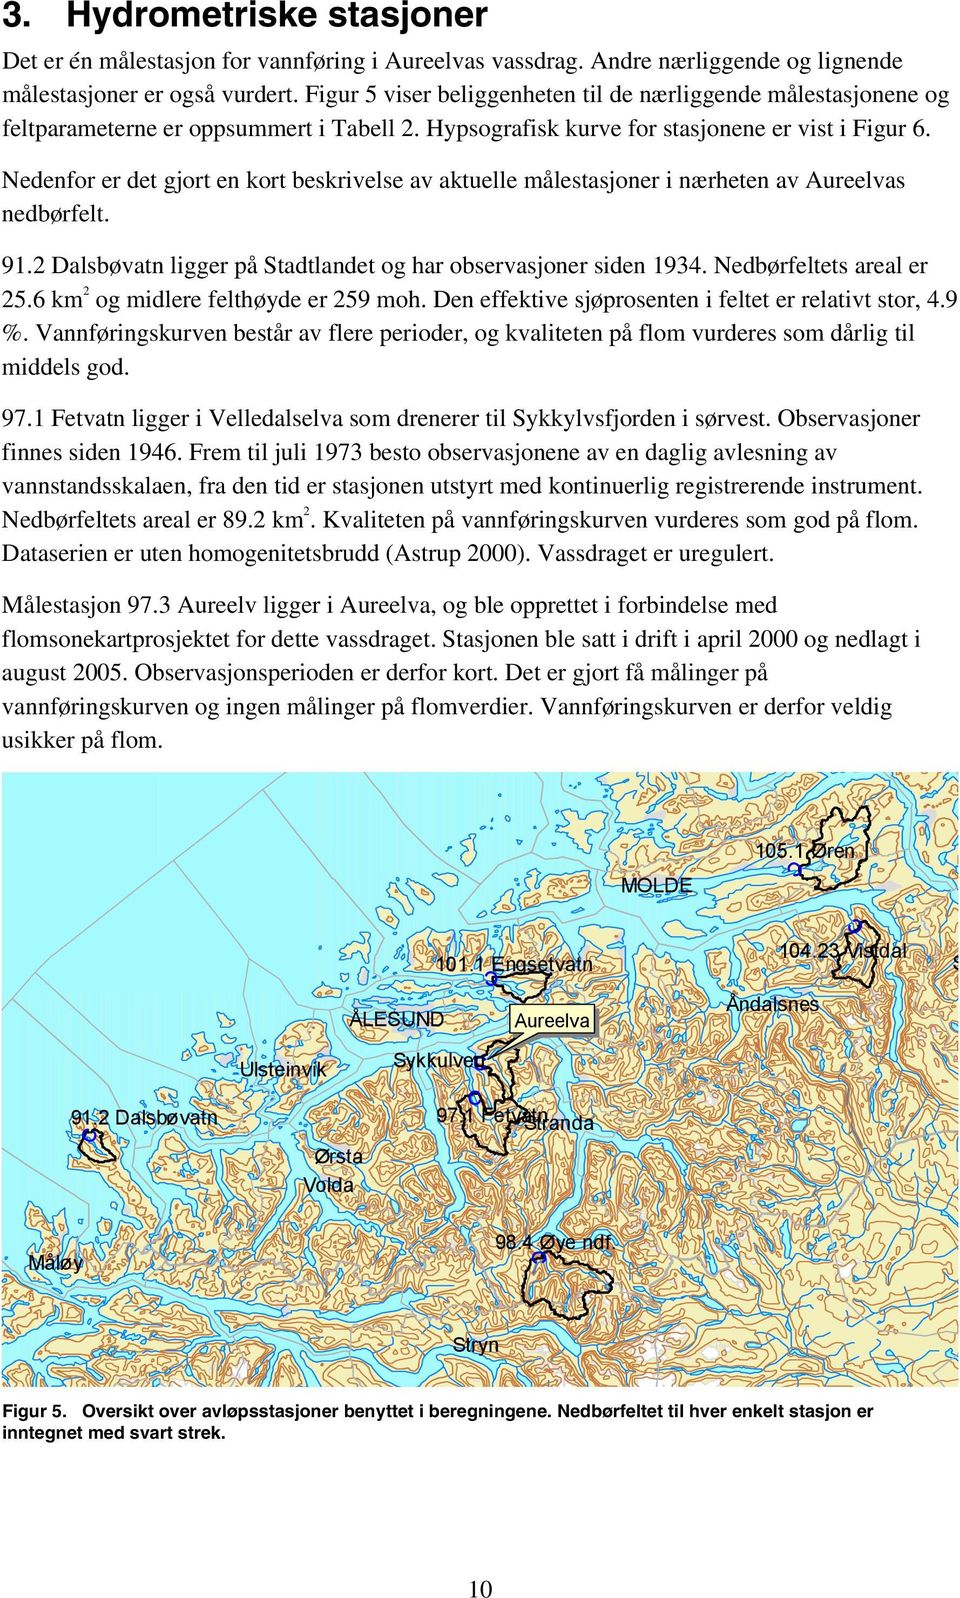 Nedenfor er det gjort en kort beskrivelse av aktuelle målestasjoner i nærheten av Aureelvas nedbørfelt. 91.2 Dalsbøvatn ligger på Stadtlandet og har observasjoner siden 1934.